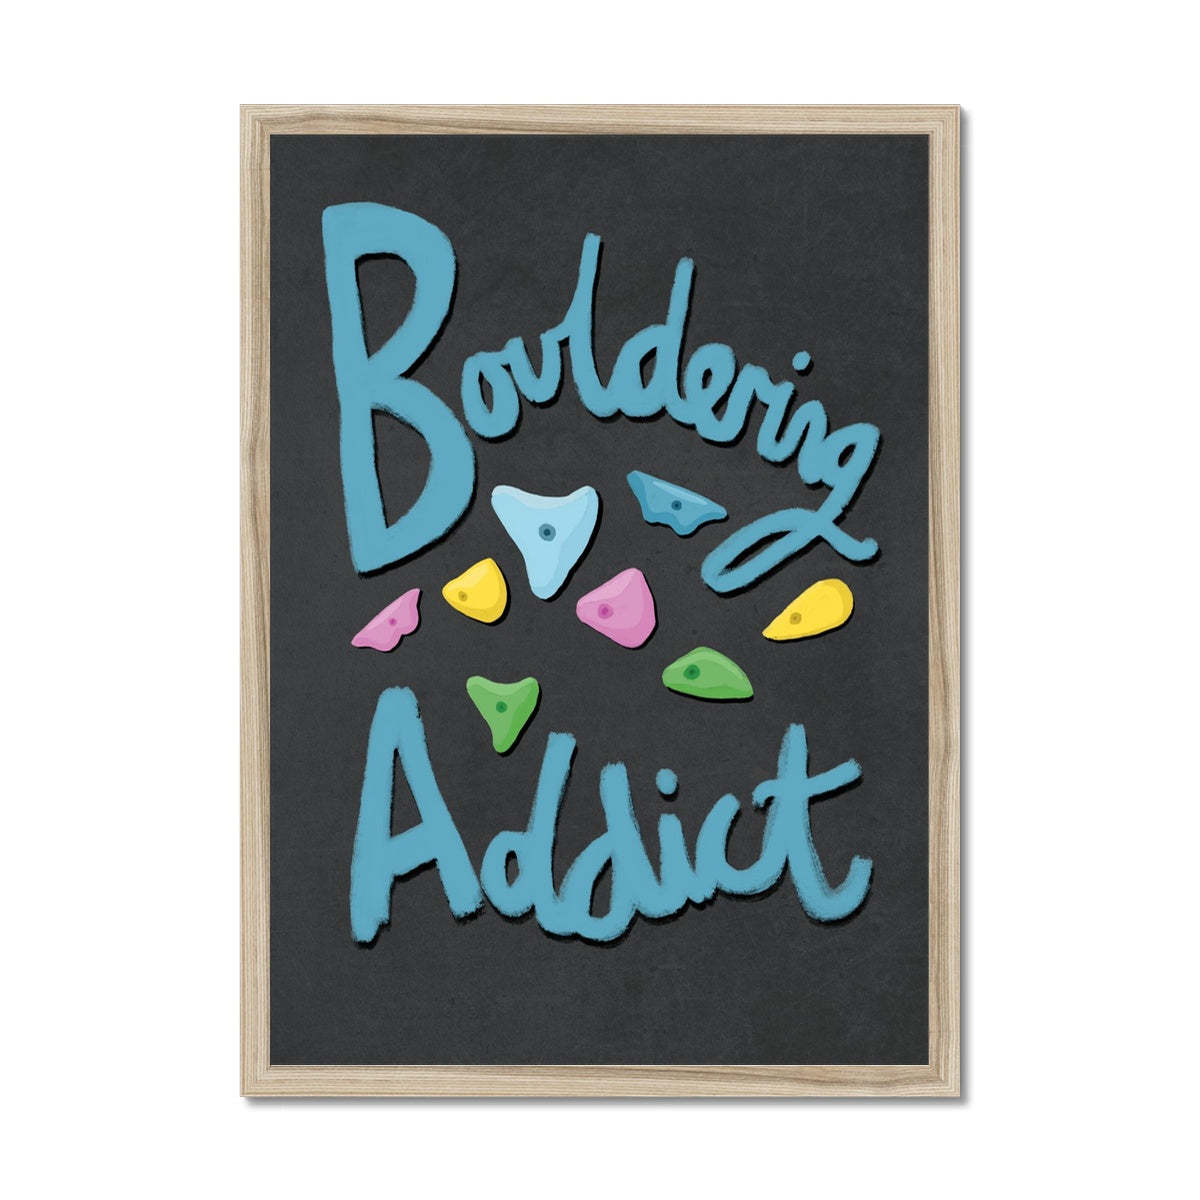 Bouldering Addict - Black and Blue Framed Print